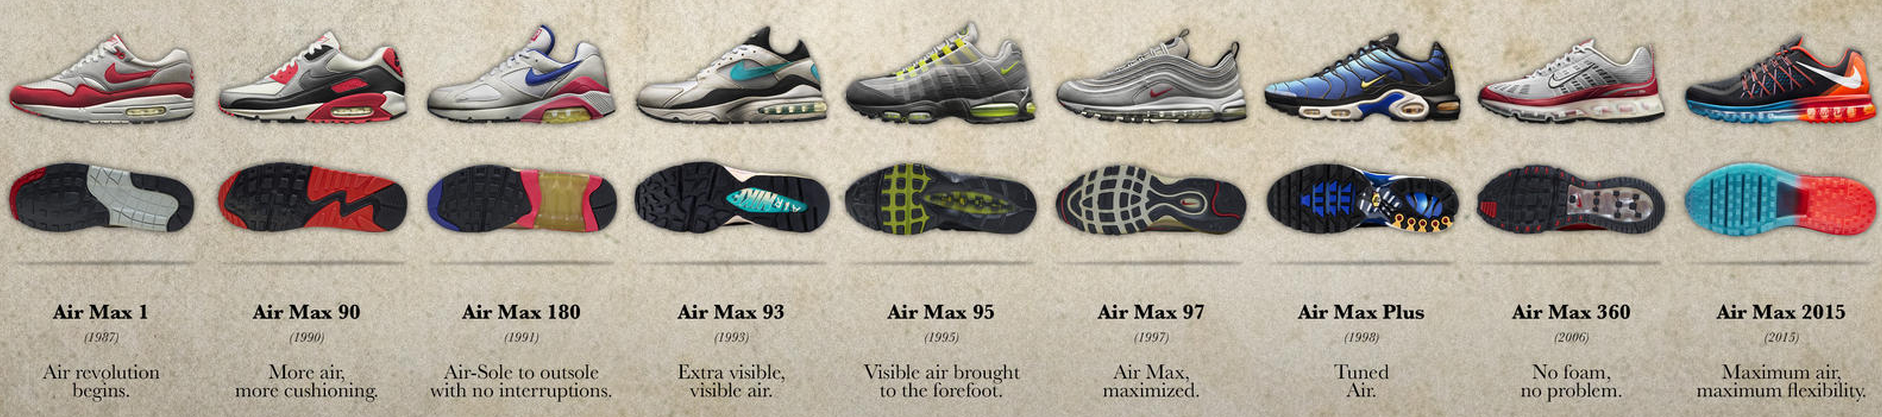 Nageslacht Knorretje staart Nike Air Max door de jaren heen